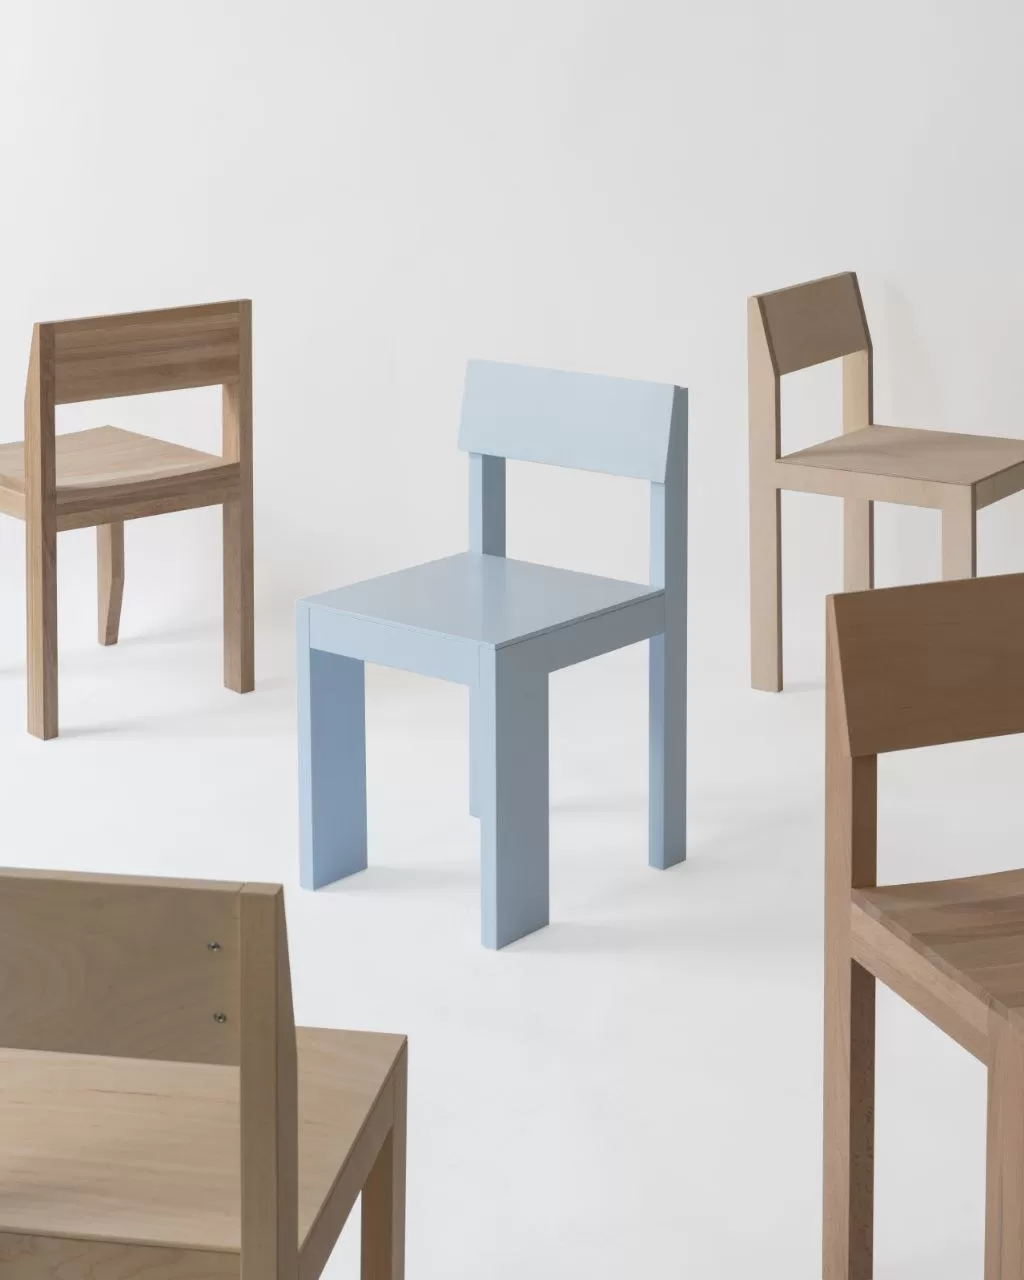 Рациональный и доступный дизайн в новой серии стульев Totoro и Take A Seat от бюро .dpt